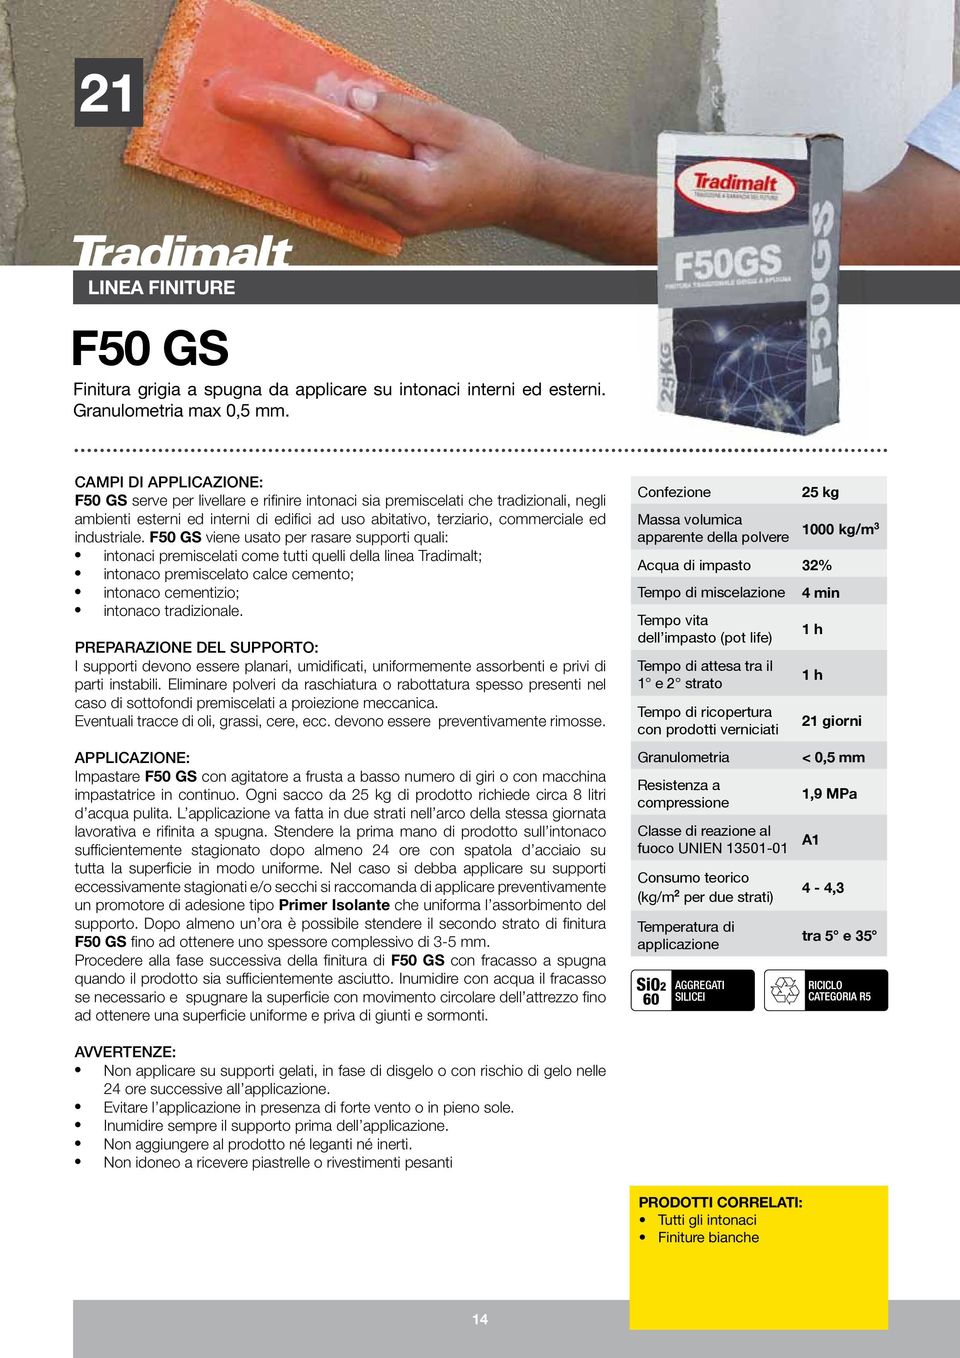 F50 GS viene usato per rasare supporti quali: intonaci premiscelati come tutti quelli della linea Tradimalt; intonaco premiscelato calce cemento; intonaco cementizio; intonaco tradizionale.